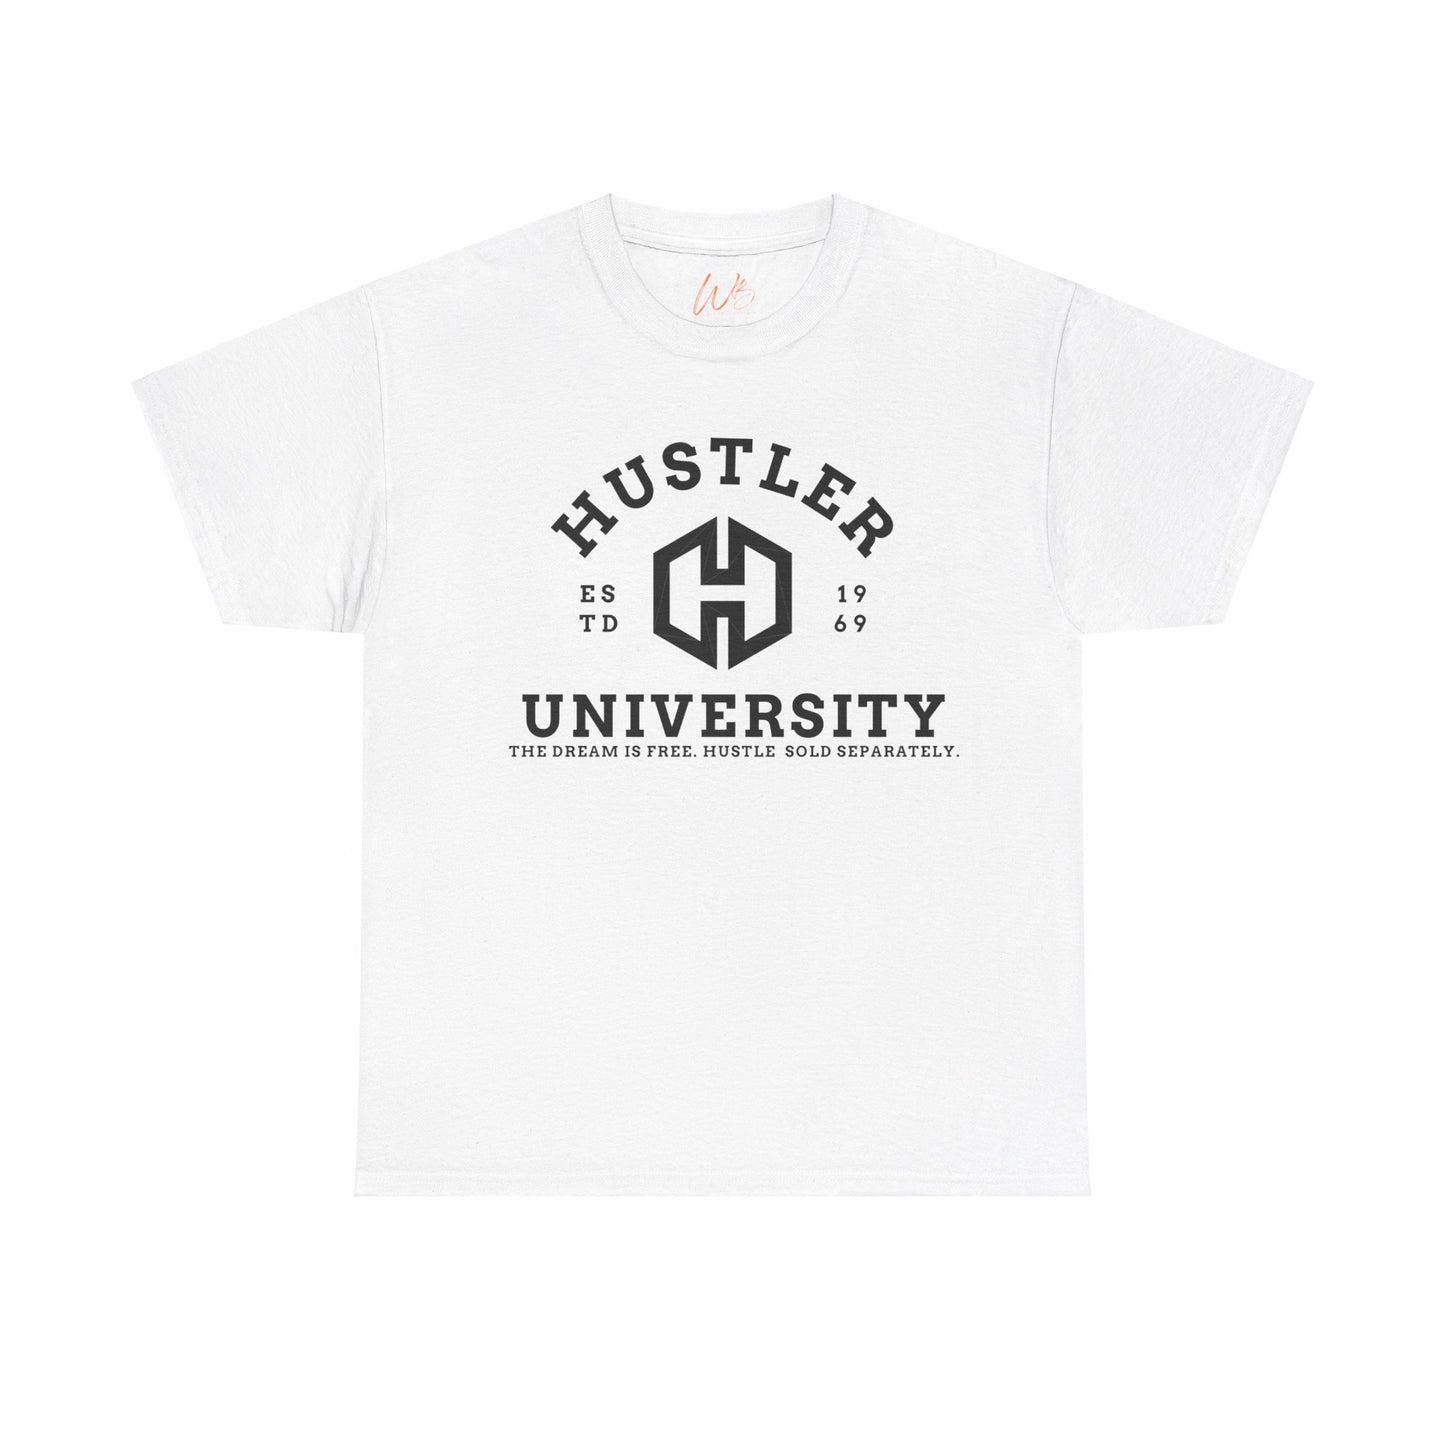 Hustler University (black)